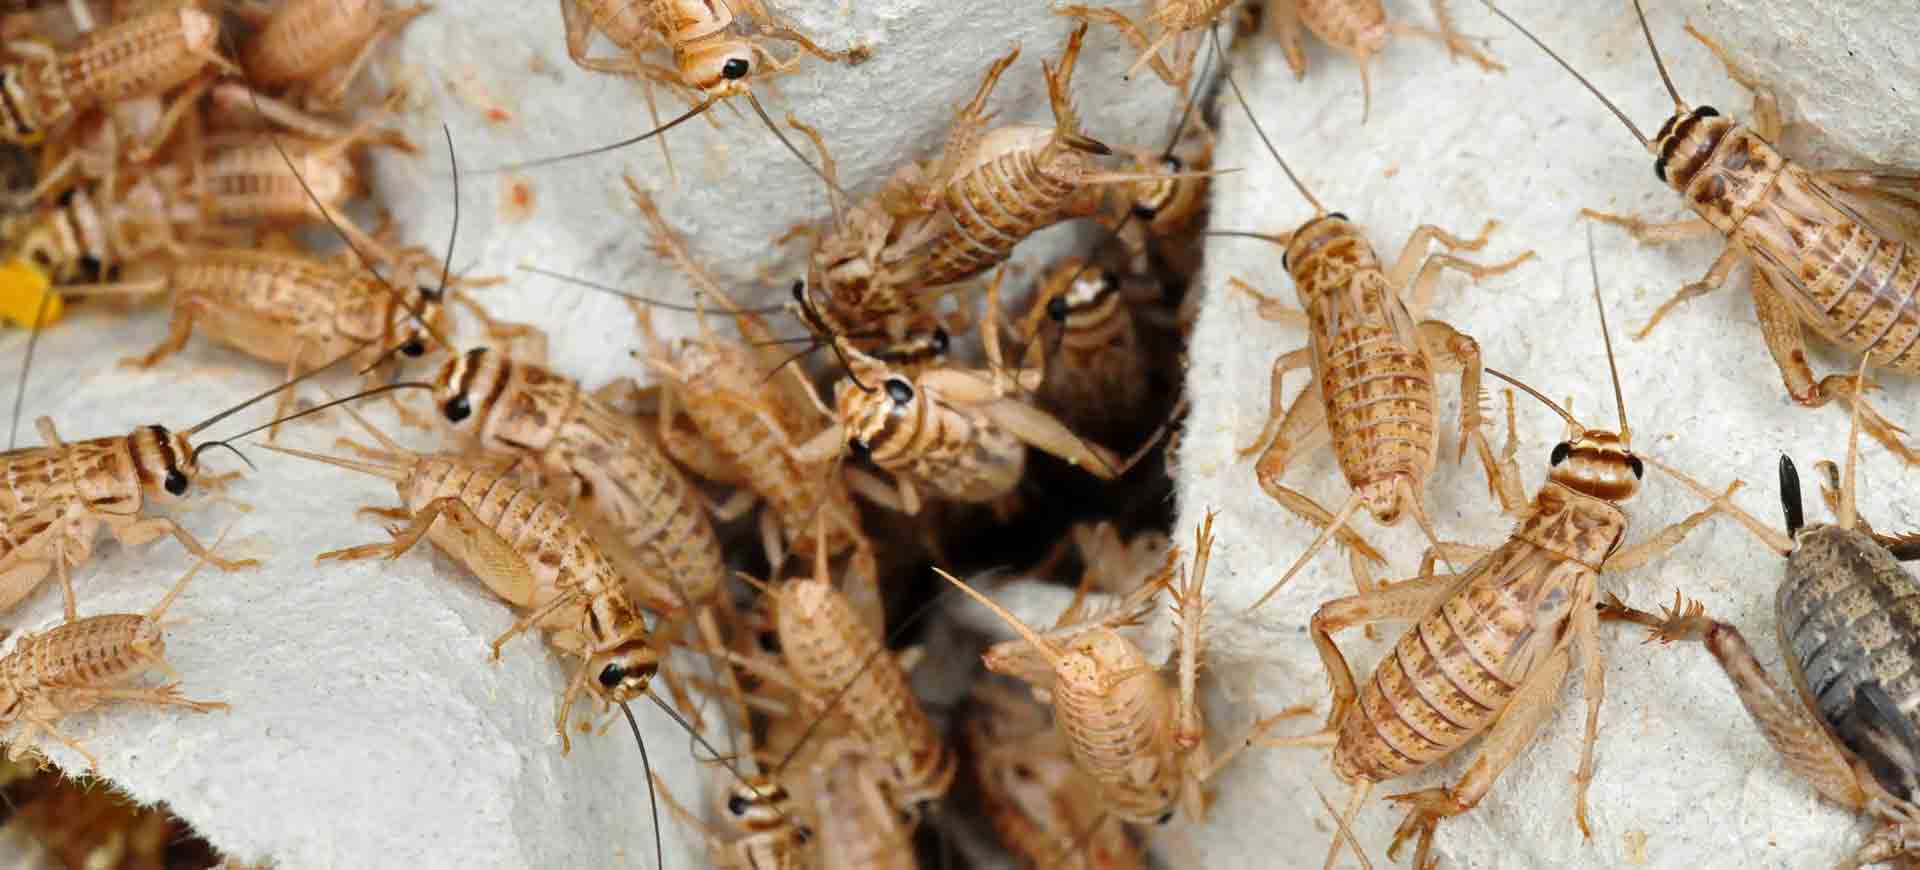 cricket pest control el cajon